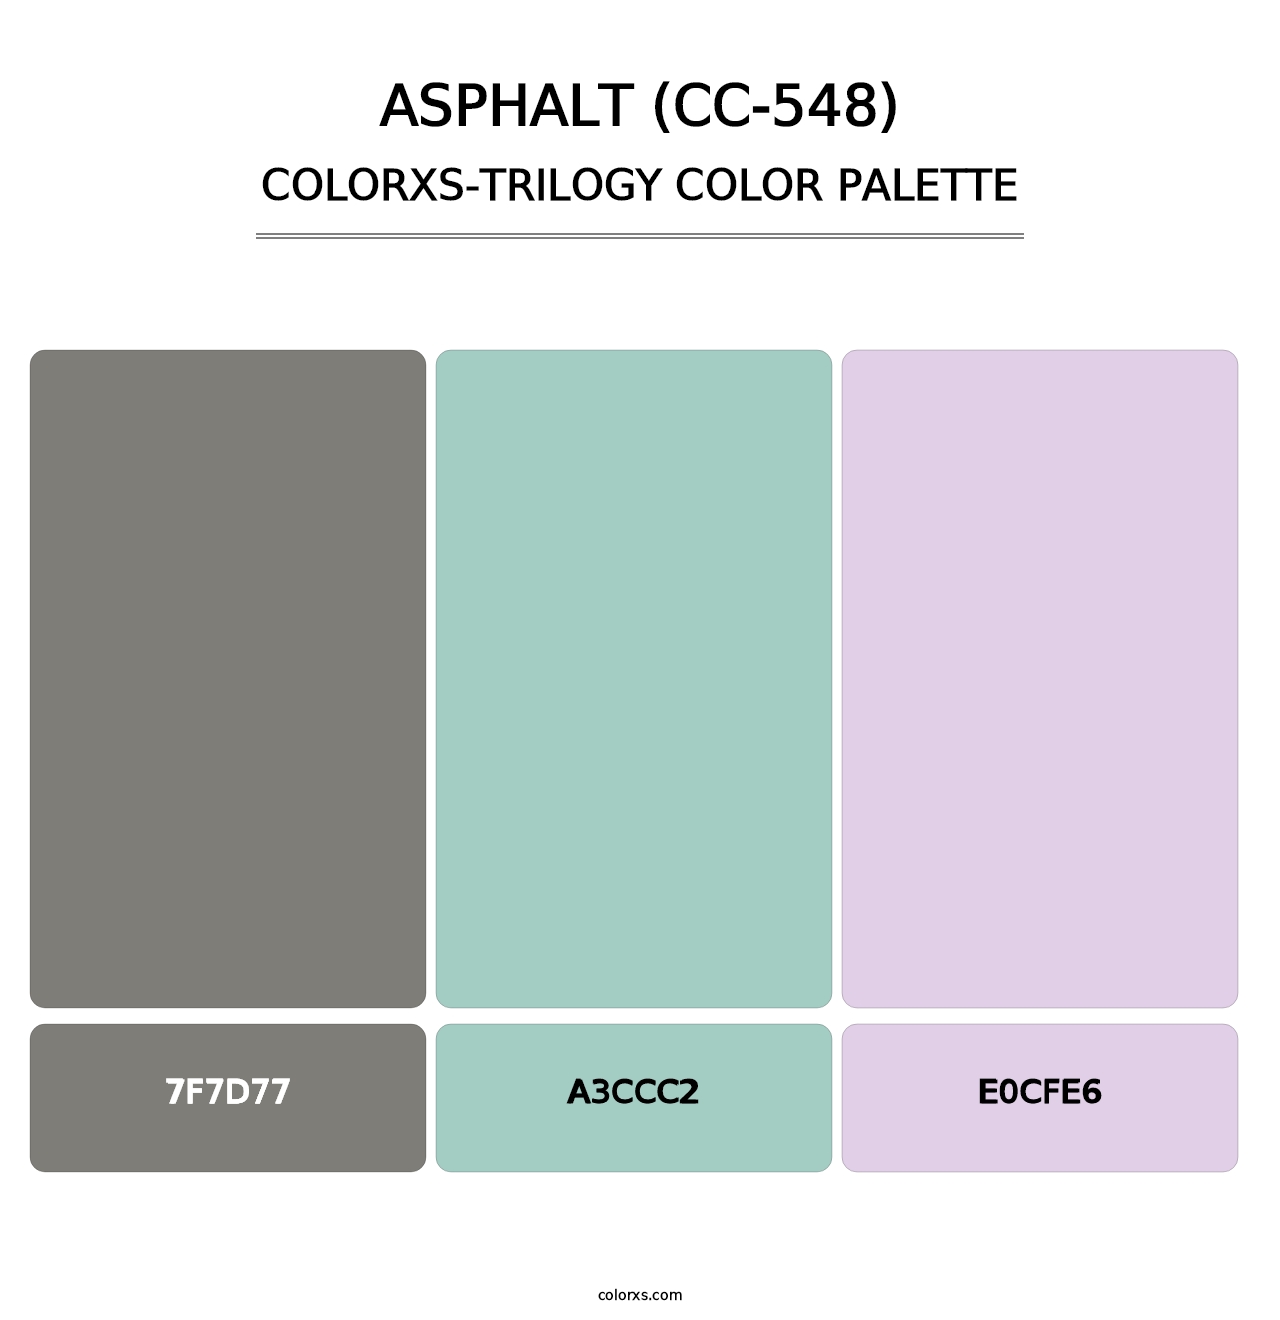 Asphalt (CC-548) - Colorxs Trilogy Palette